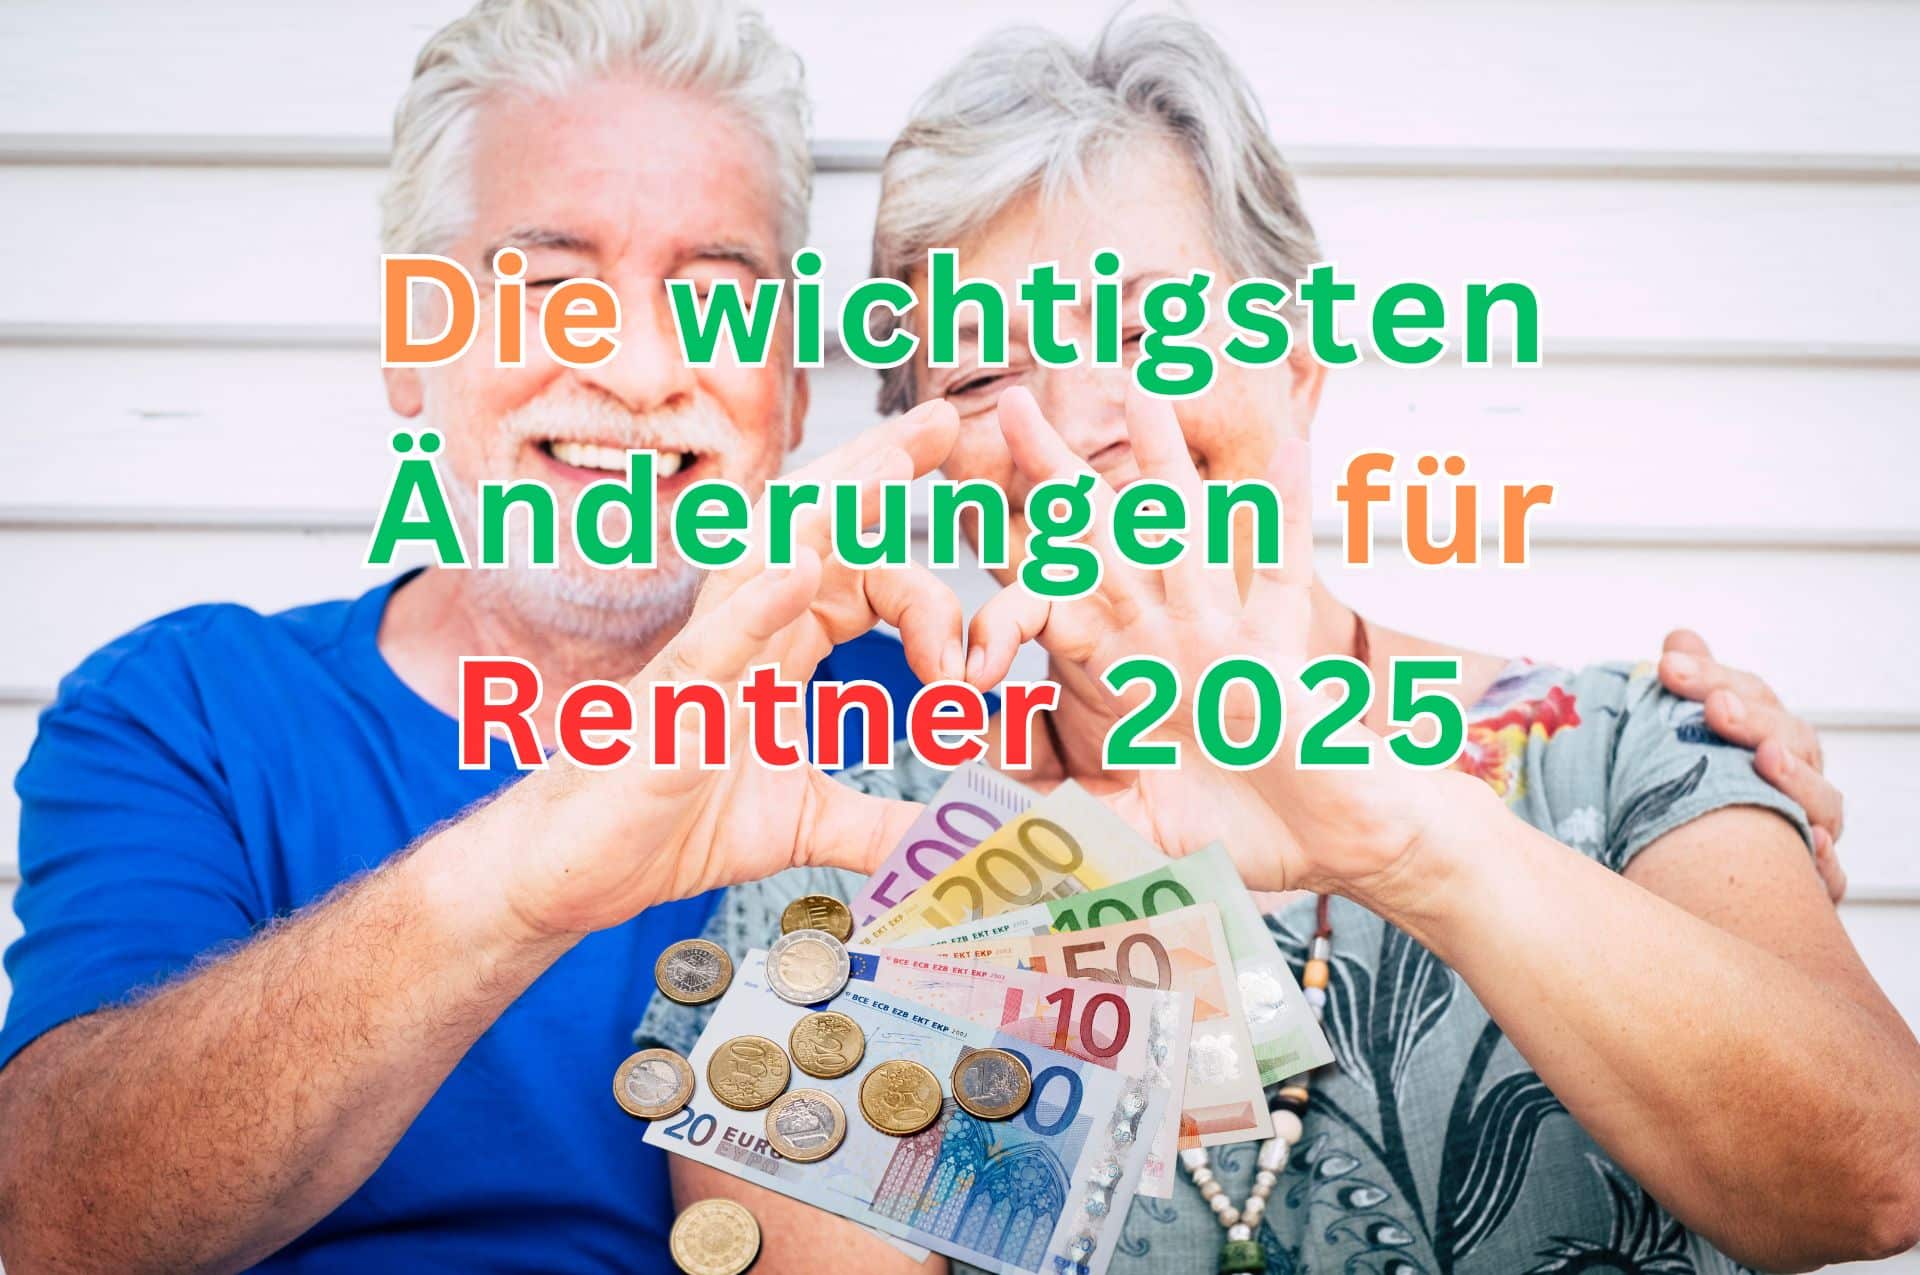 Die wichtigsten Änderungen bei Rente im Jahr 2025.